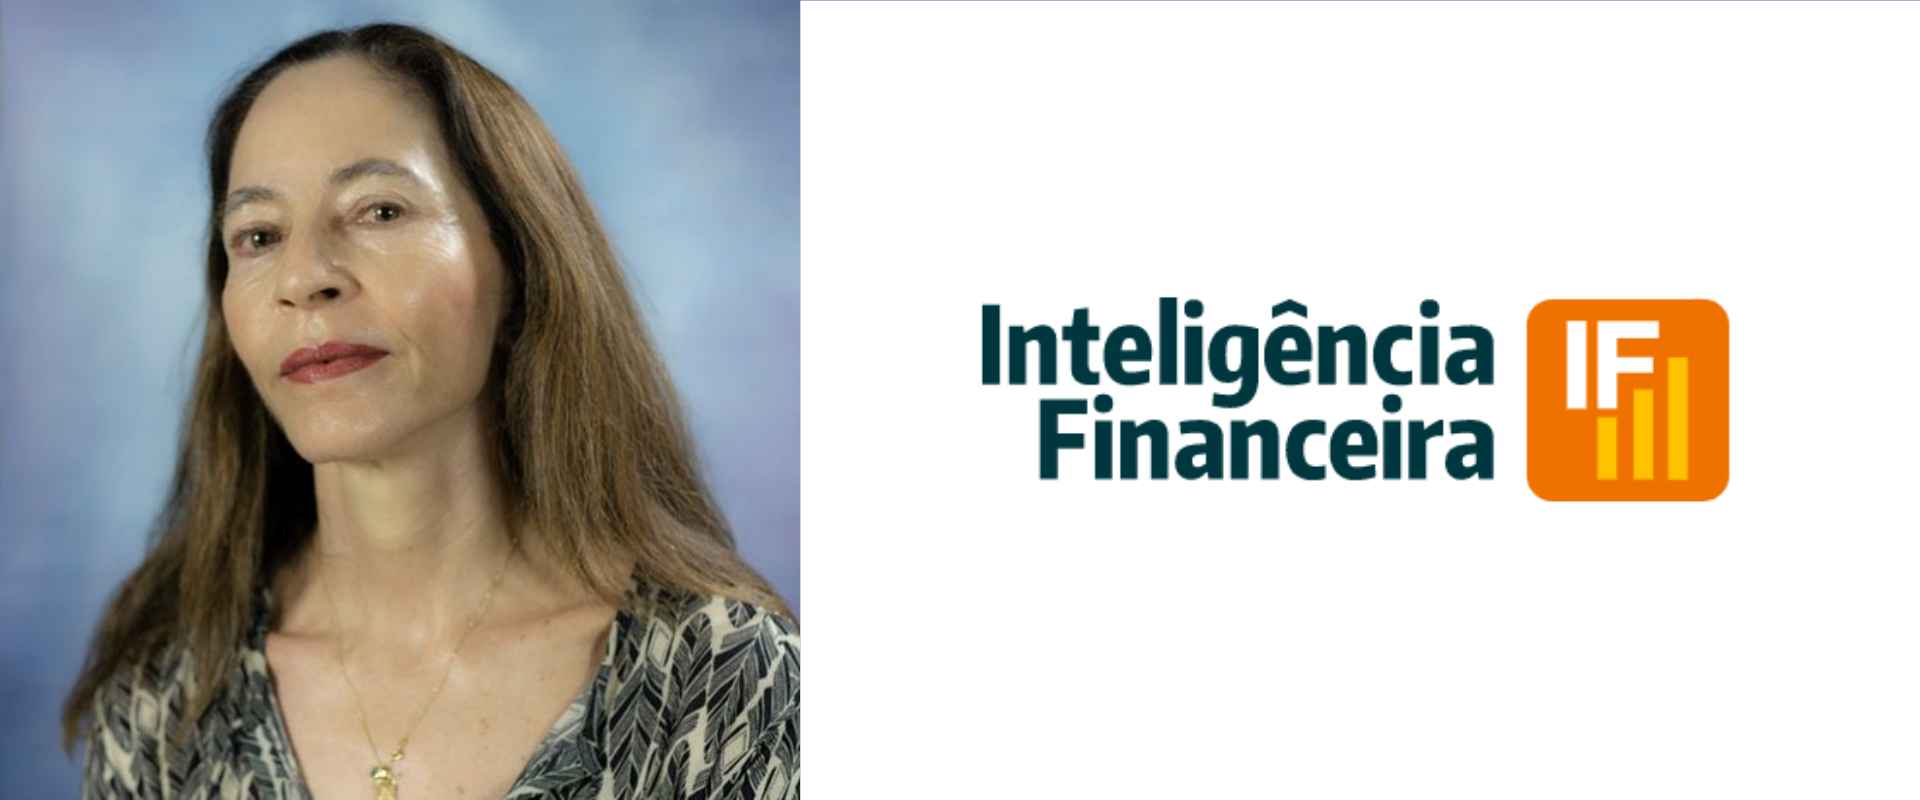 Em depoimento ao Inteligência Financeira a professora Margarida Gutierrez comenta sobre folga orçamentária do Relatório Itaú.